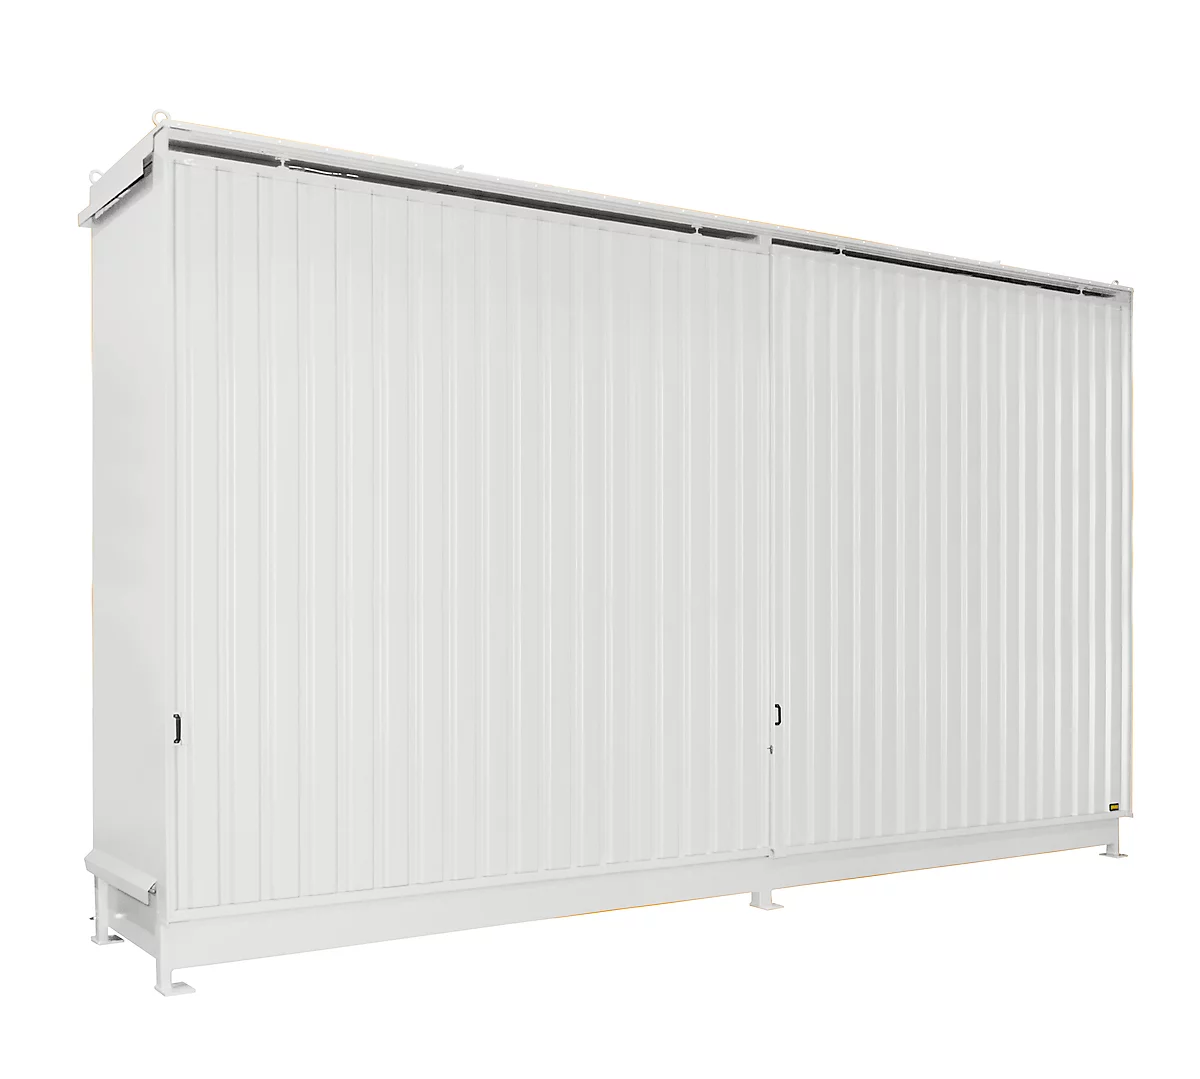 BAUER CEN 75-3 estantería contenedor, acero, puerta corredera, ancho 7800 x fondo 1550 x alto 4545 mm, blanco